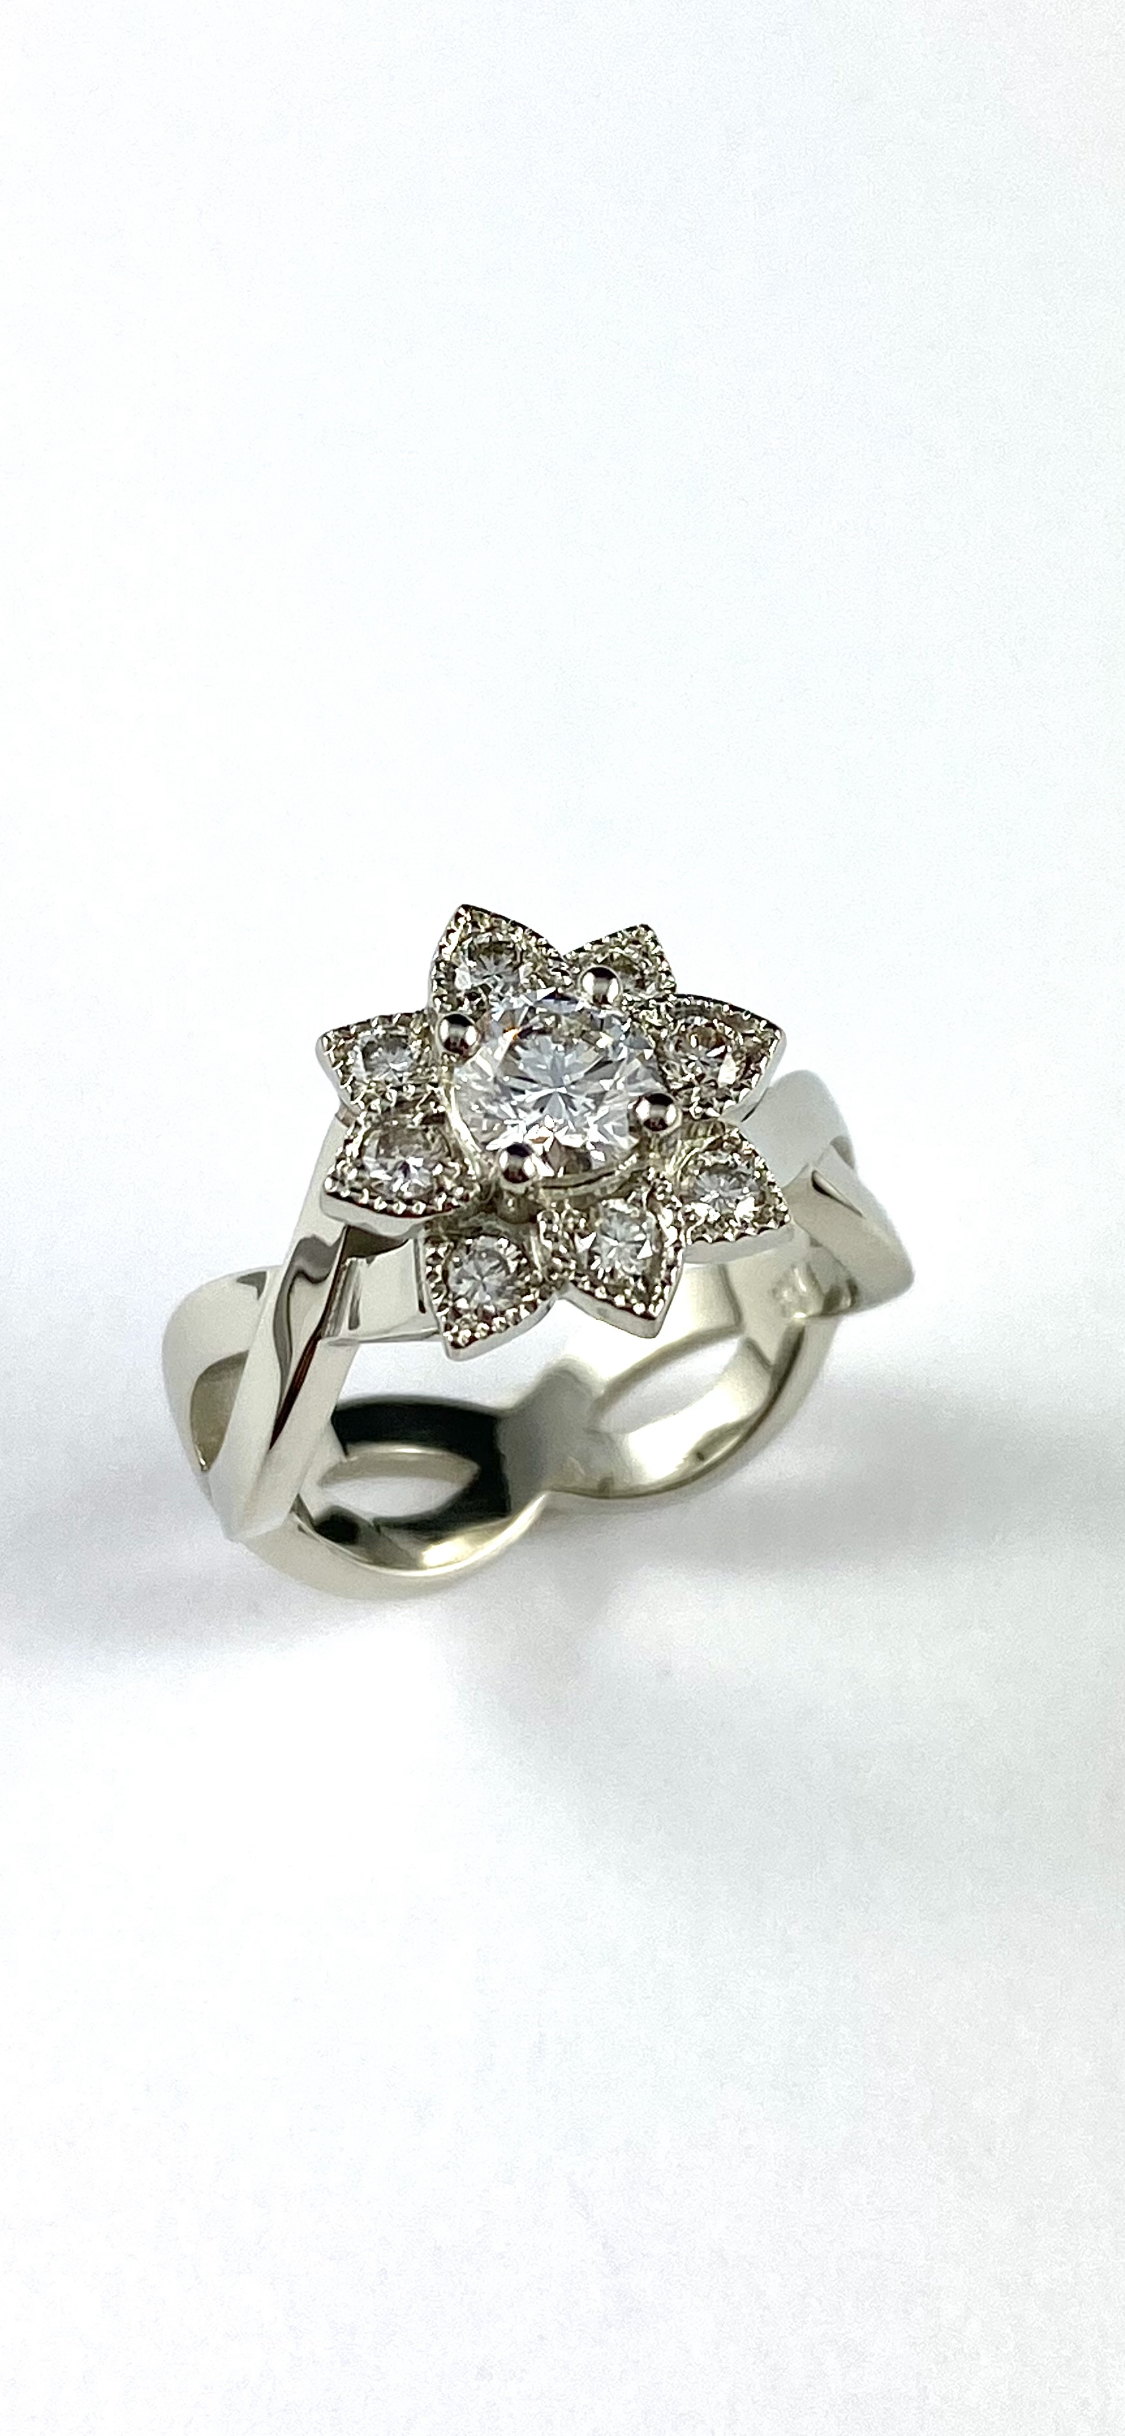 19K White Gold Diamond Engagement Ring